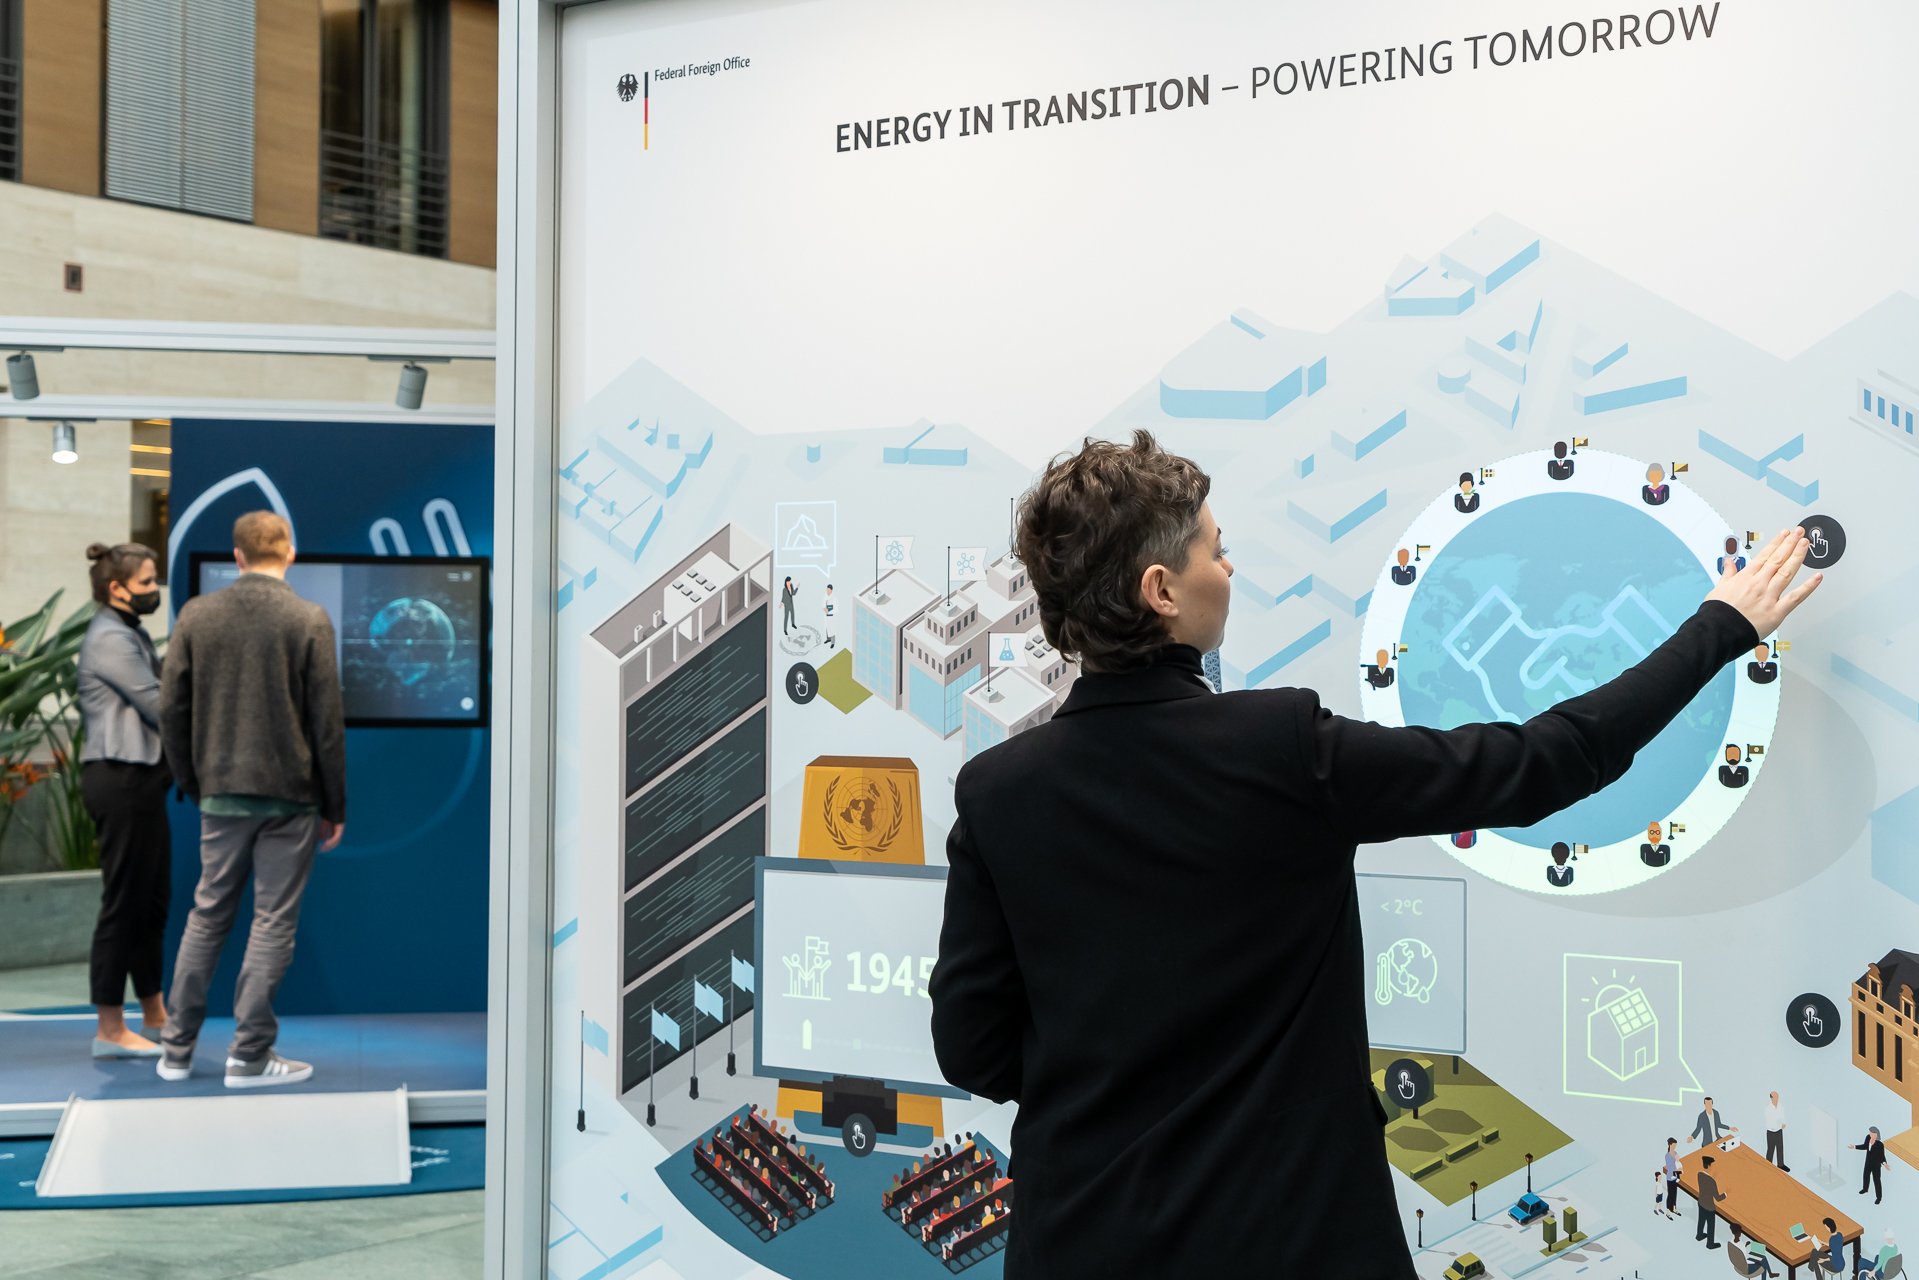 Eine Besucherin steht an der “Energy in Transition” Station der Ausstellung und löst eine Animation aus. Im Hintergrund befinden sich eine Besucherin und ein Besucher vor einem Bildschirm der Ausstellungsstation Erneuerbare Energien.